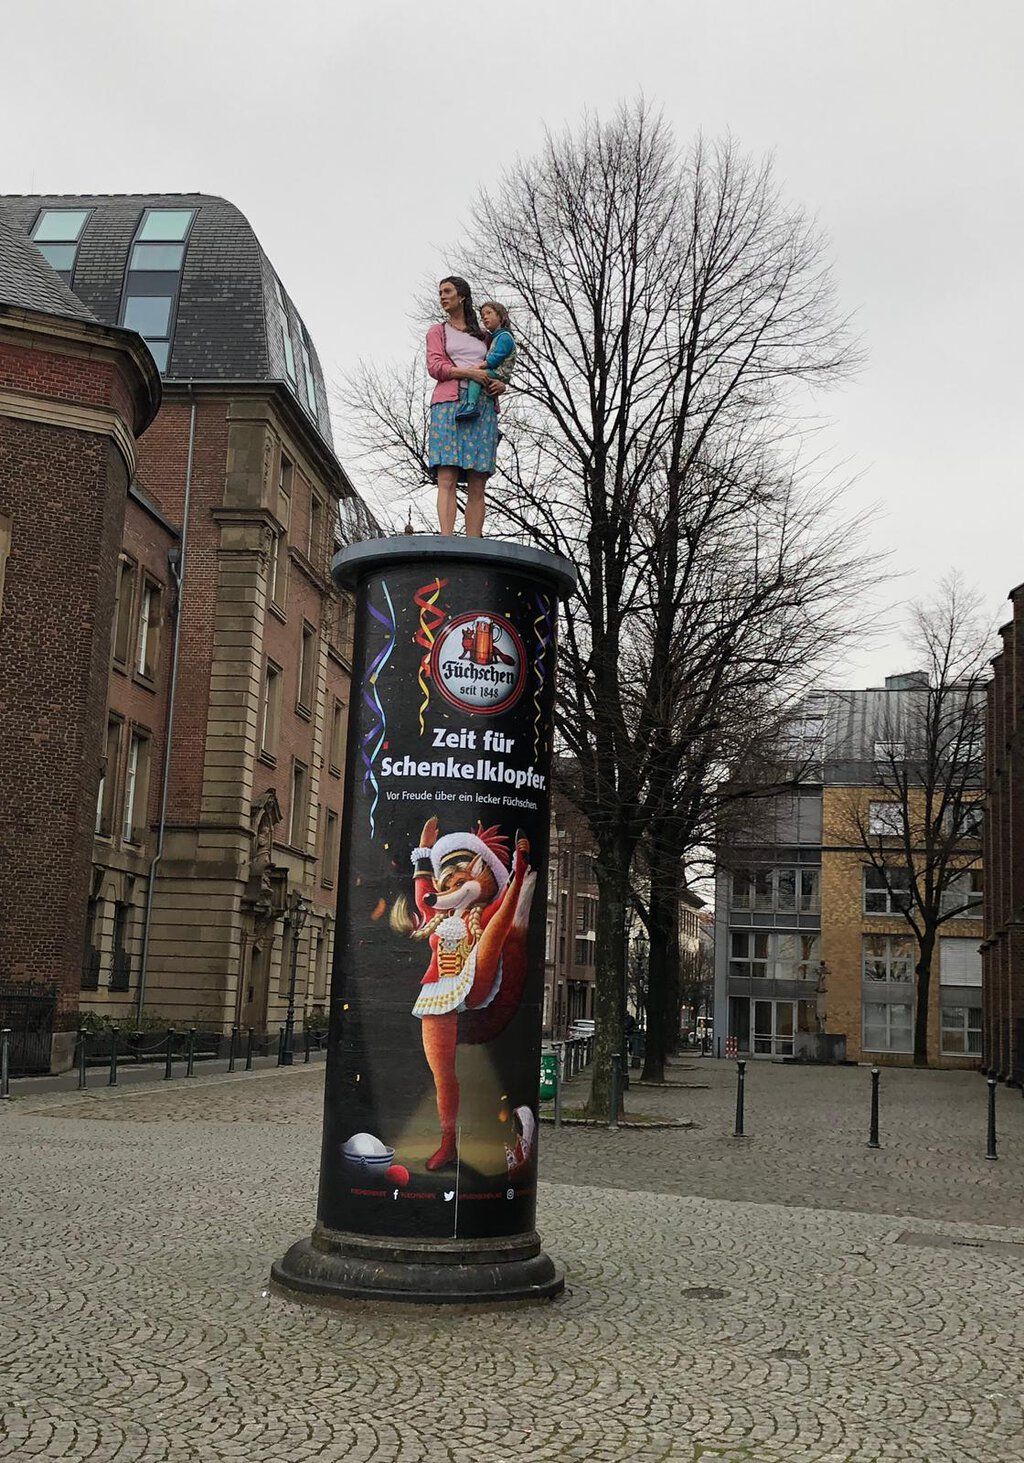 Werbeplakat der Brauerei Füchschen auf einer Litfaßsäule in der Düsseldorfer Altstadt